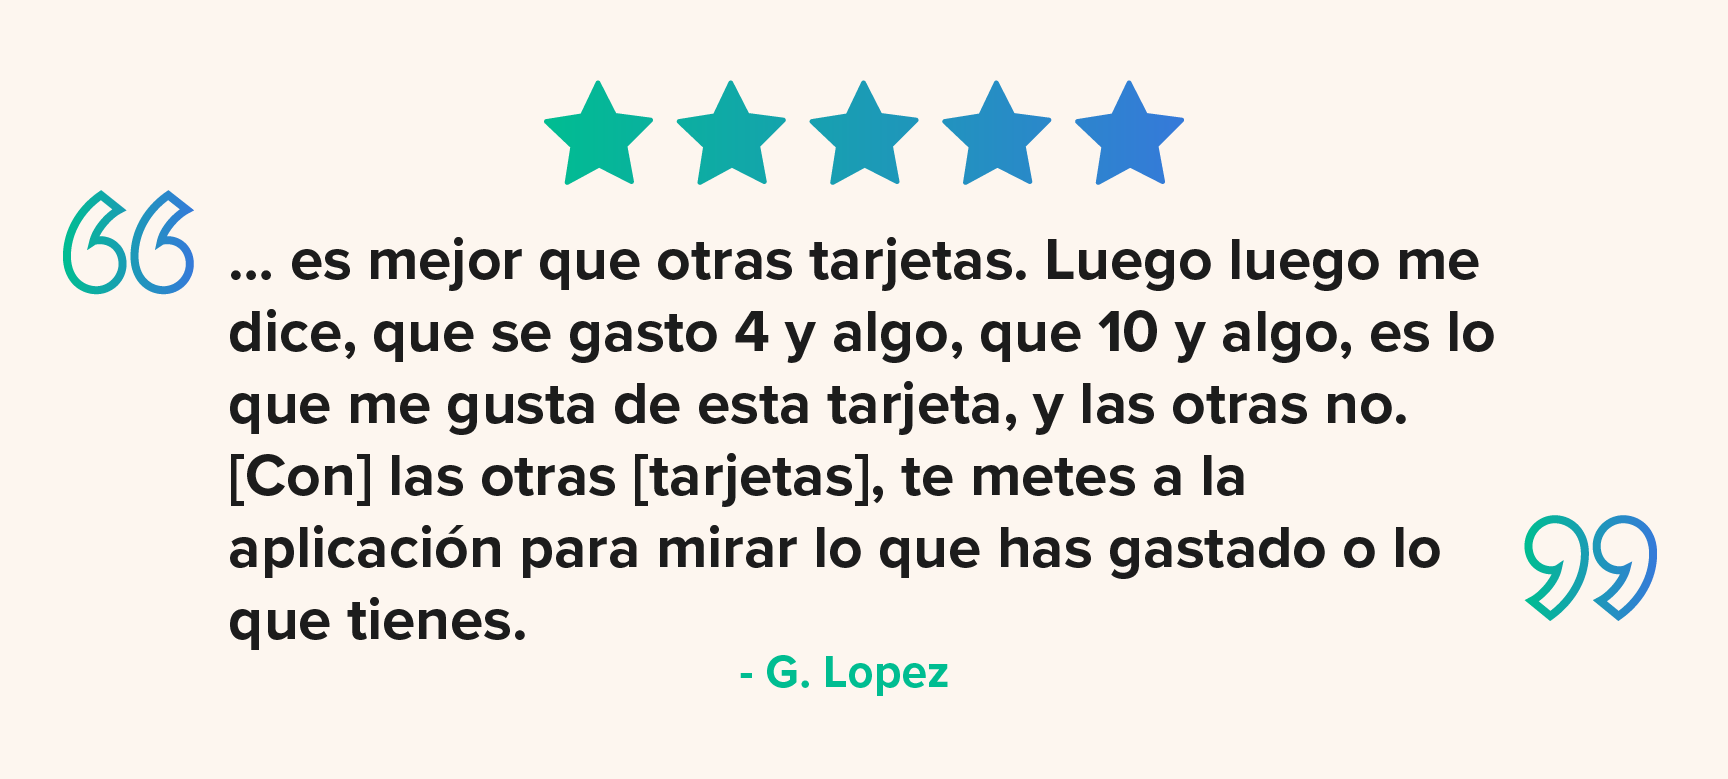 Testimonio-G-Lopez-2.png